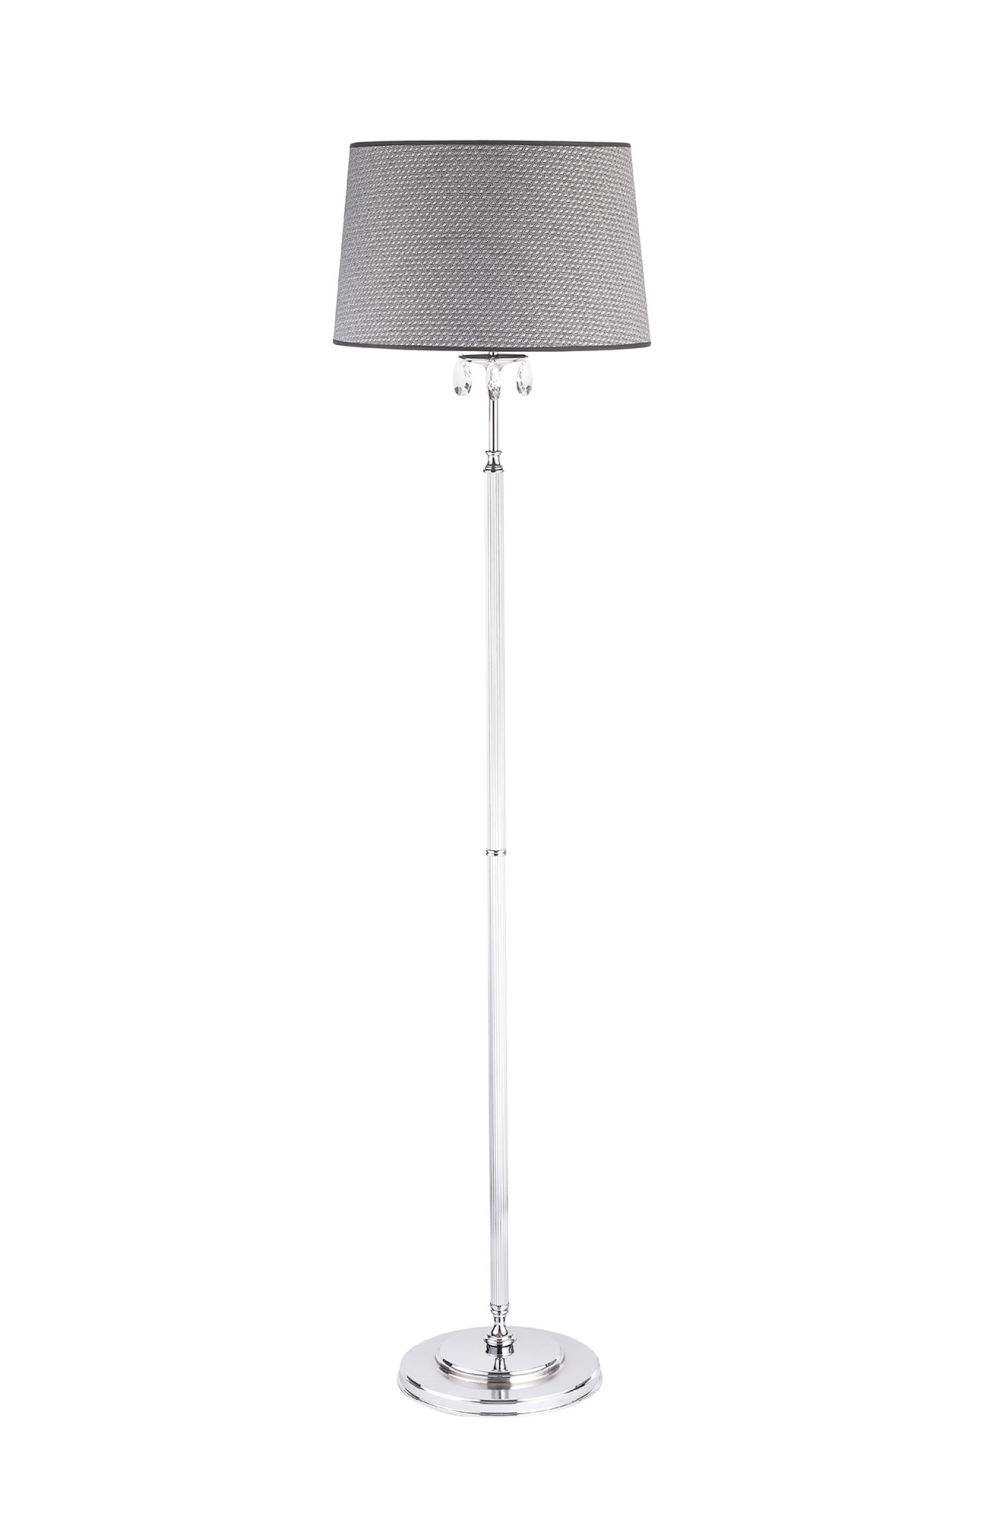 Stehlampe Grau Chrom 166cm AELUA Wohnzimmer Licht